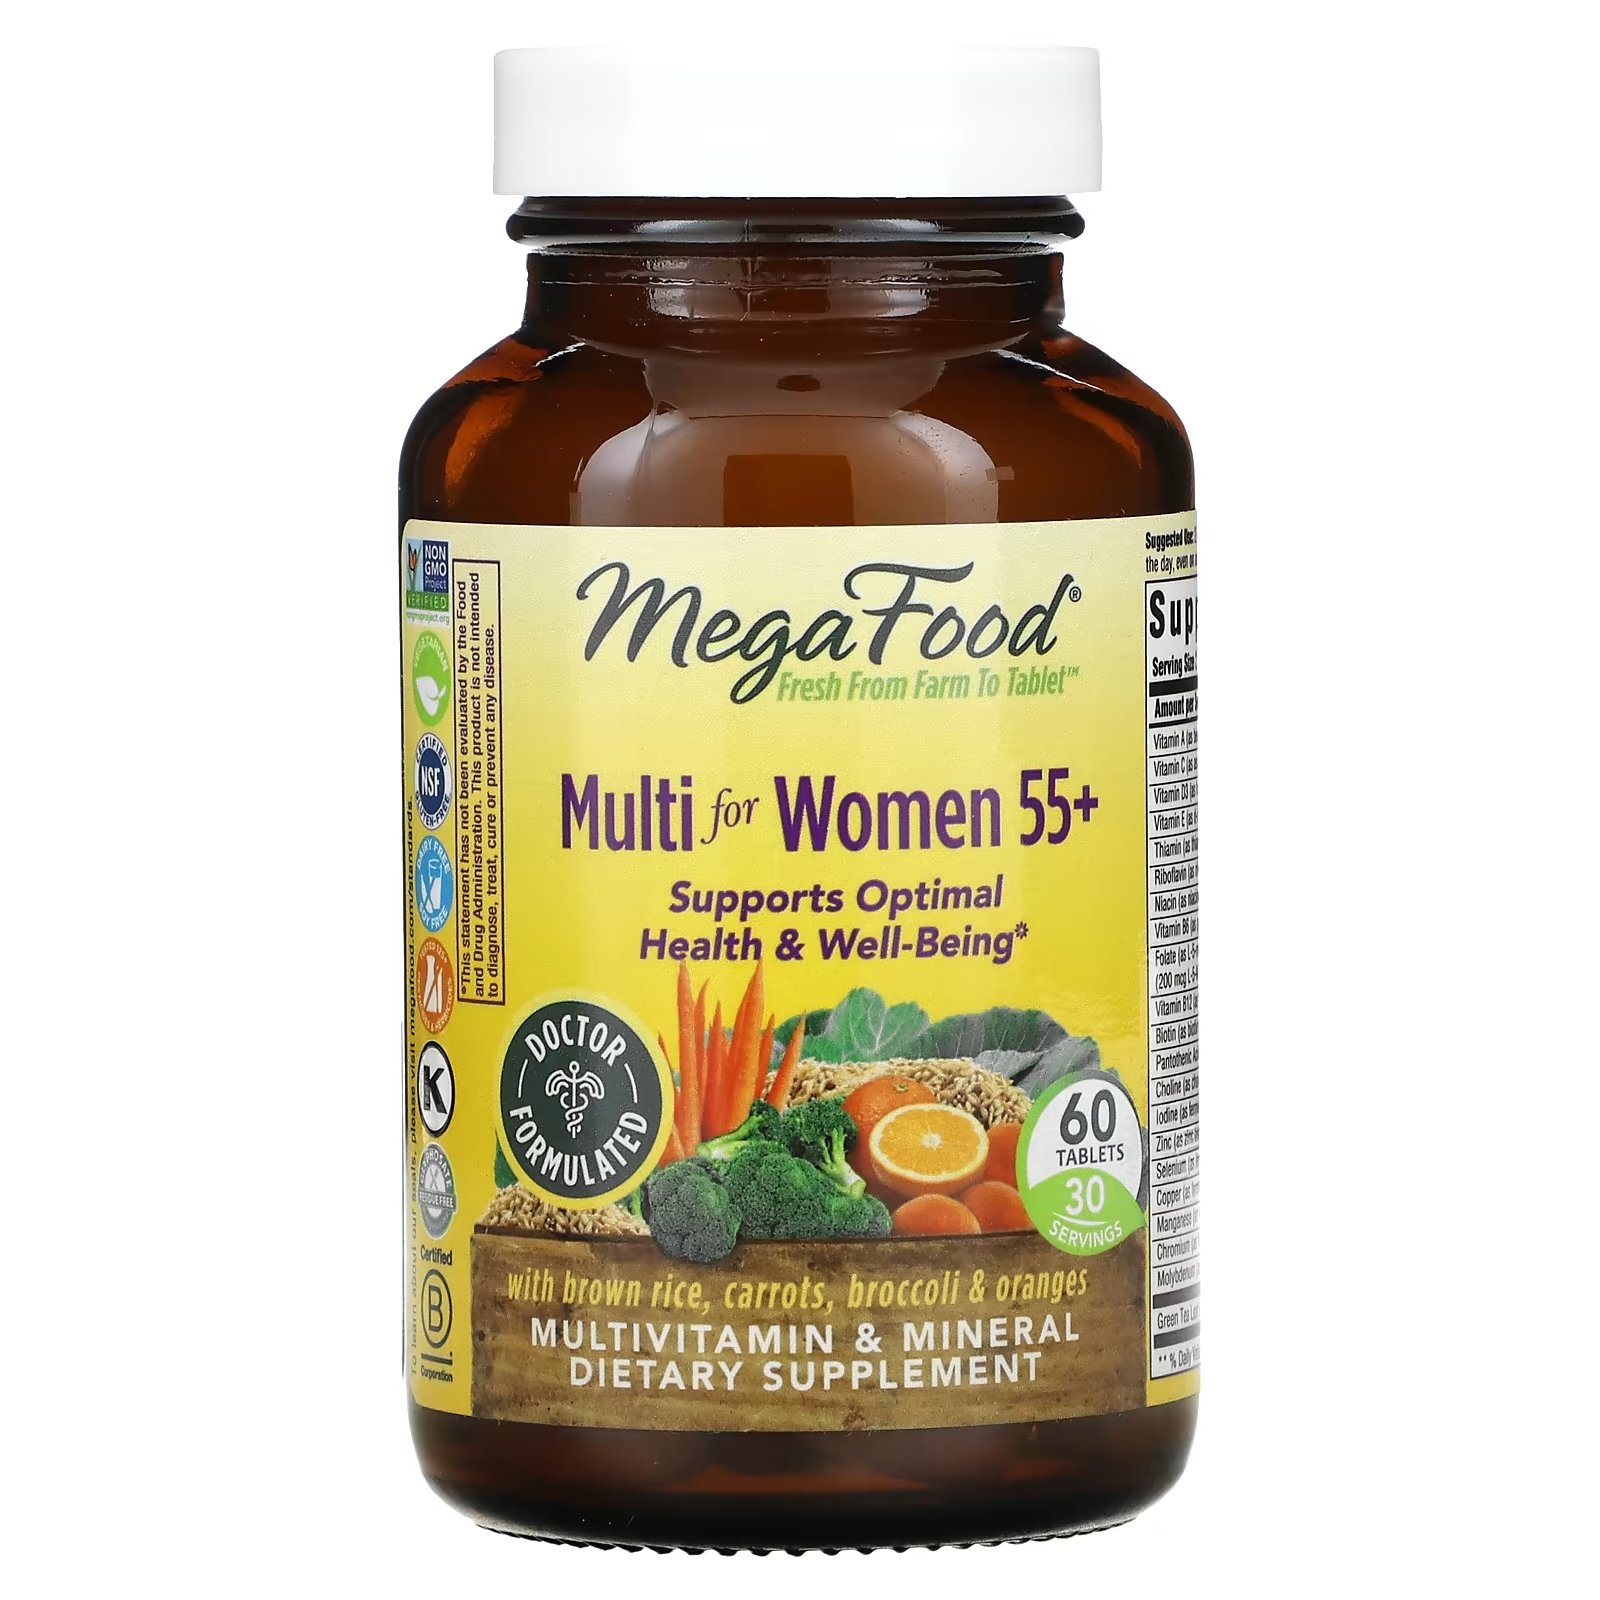 Комплекс Витаминов и Микроэлементов для Женщин Старше 55 лет MegaFood, 60 таблеток megafood multi for men 55 комплекс витаминов и микроэлементов для мужчин старше 55 лет 120 таблеток